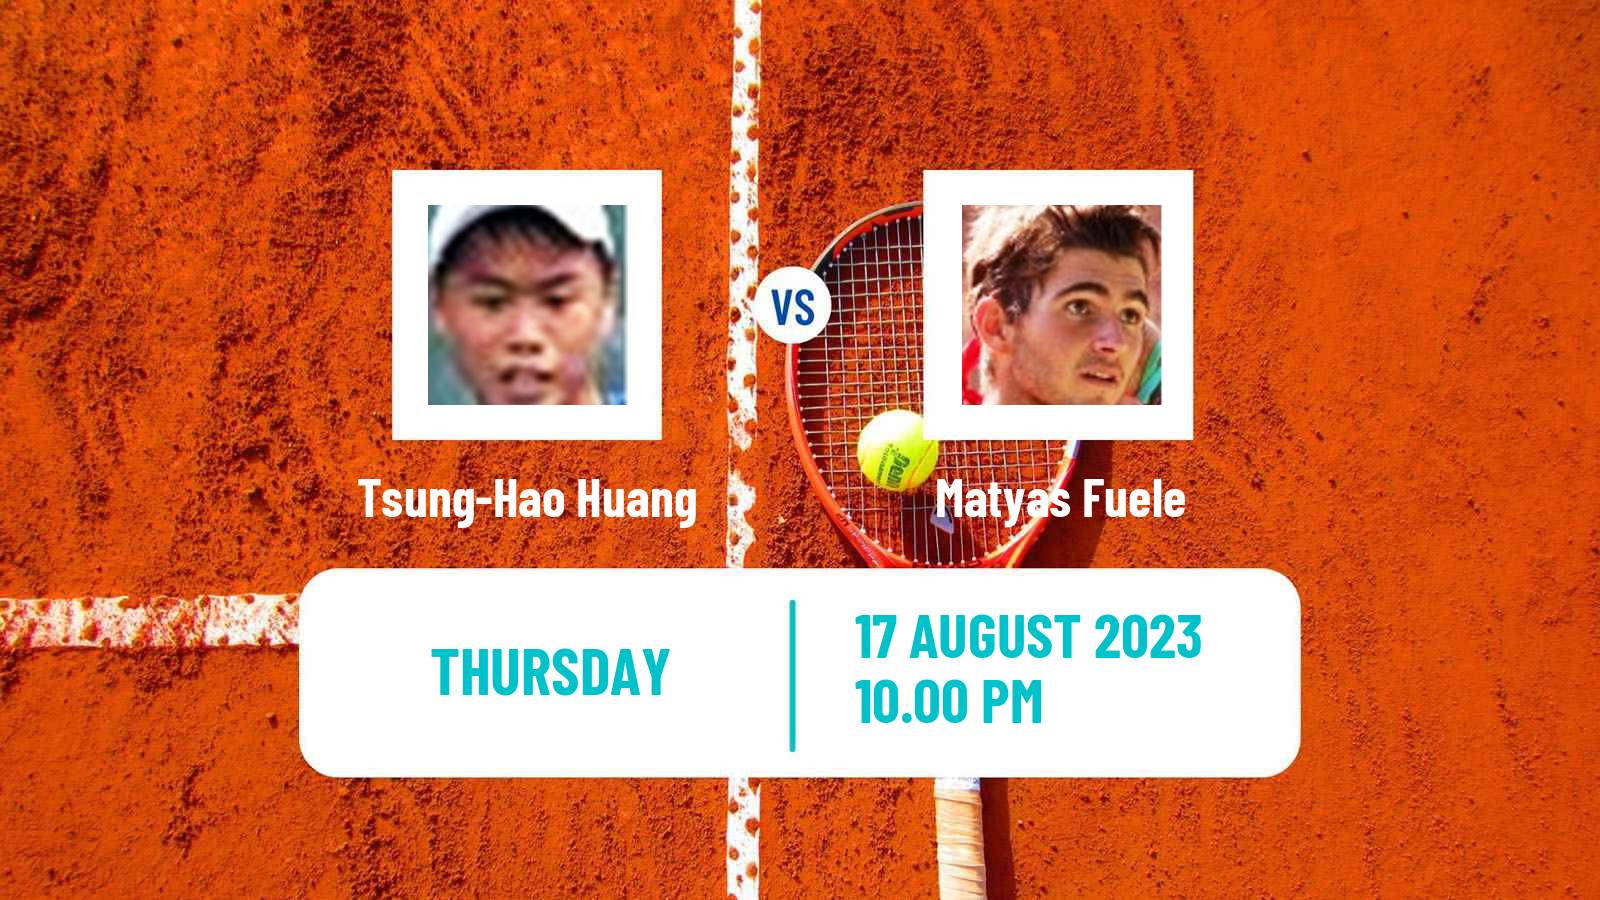 Tennis ITF M25 Tainan Men Tsung-Hao Huang - Matyas Fuele